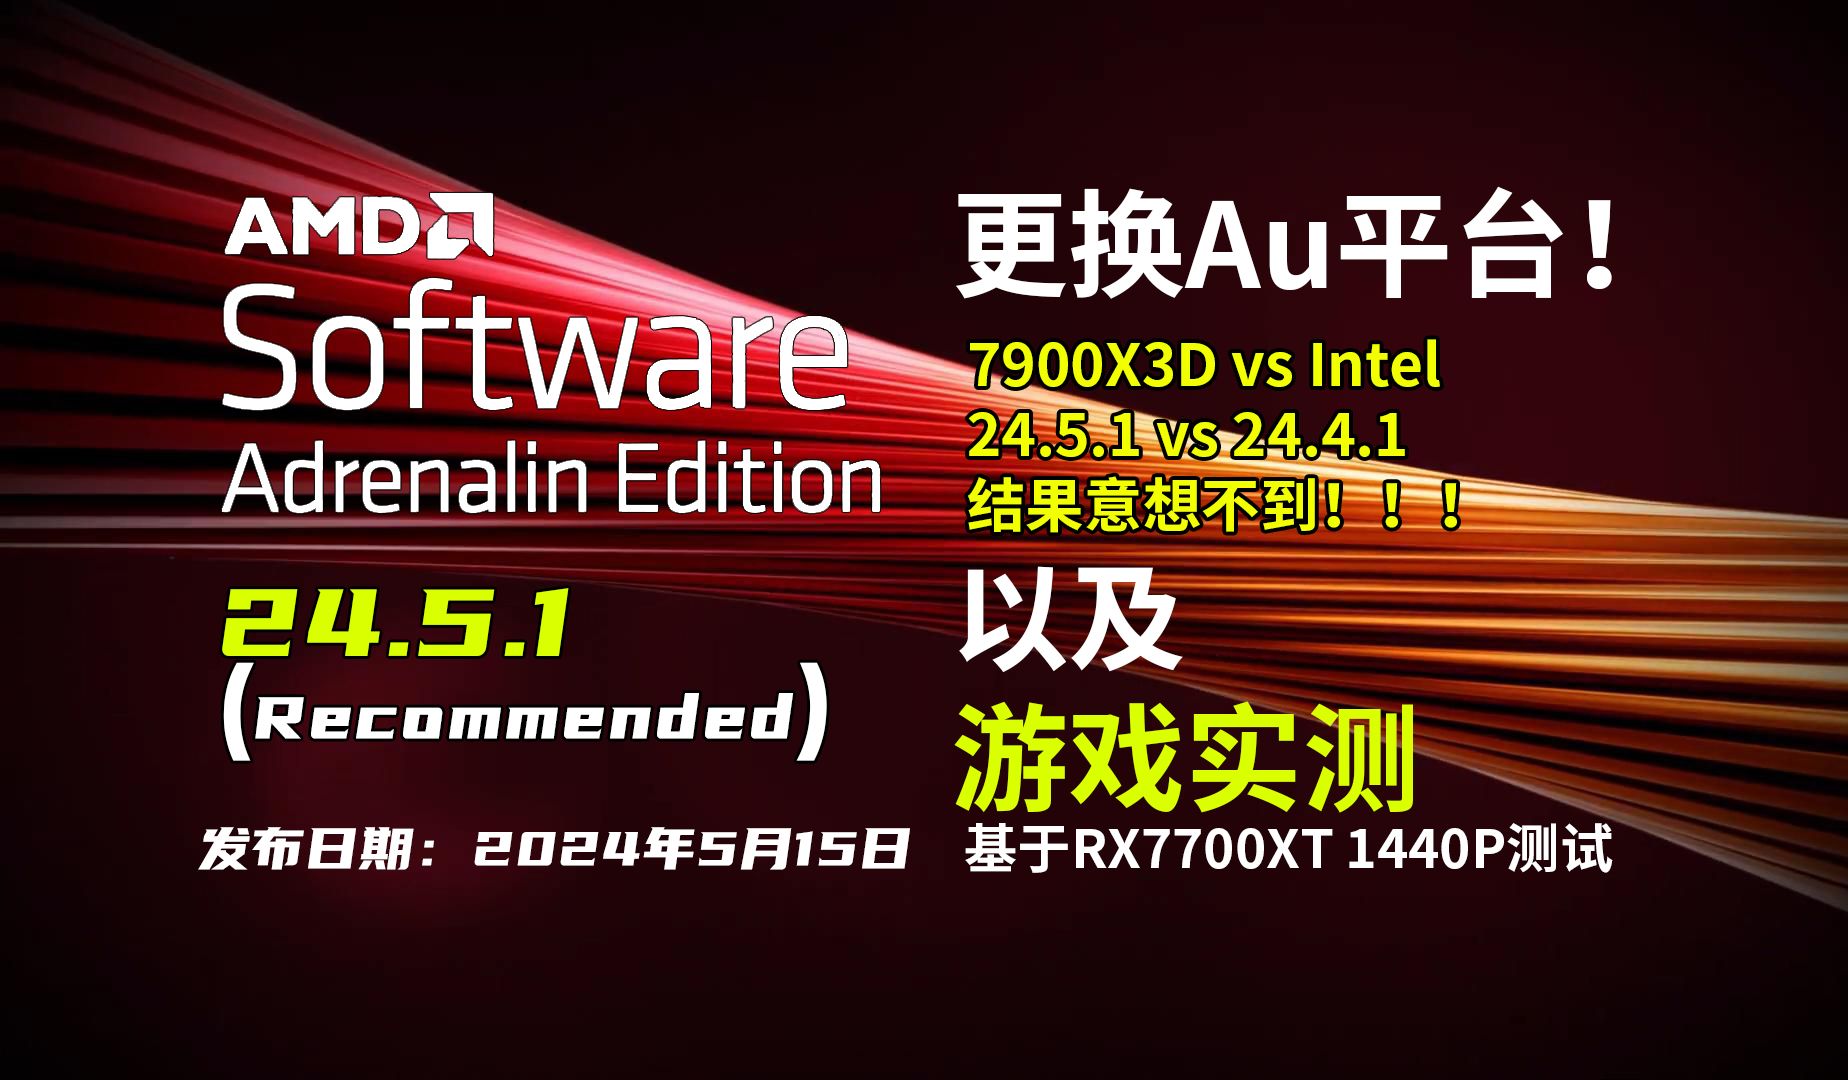 AMD驱动 24.5.1(WHQL推荐)更新 | 24.5.1 Vs 24.4.1 | 10款游戏FPS测试【轻兵】AMD平台